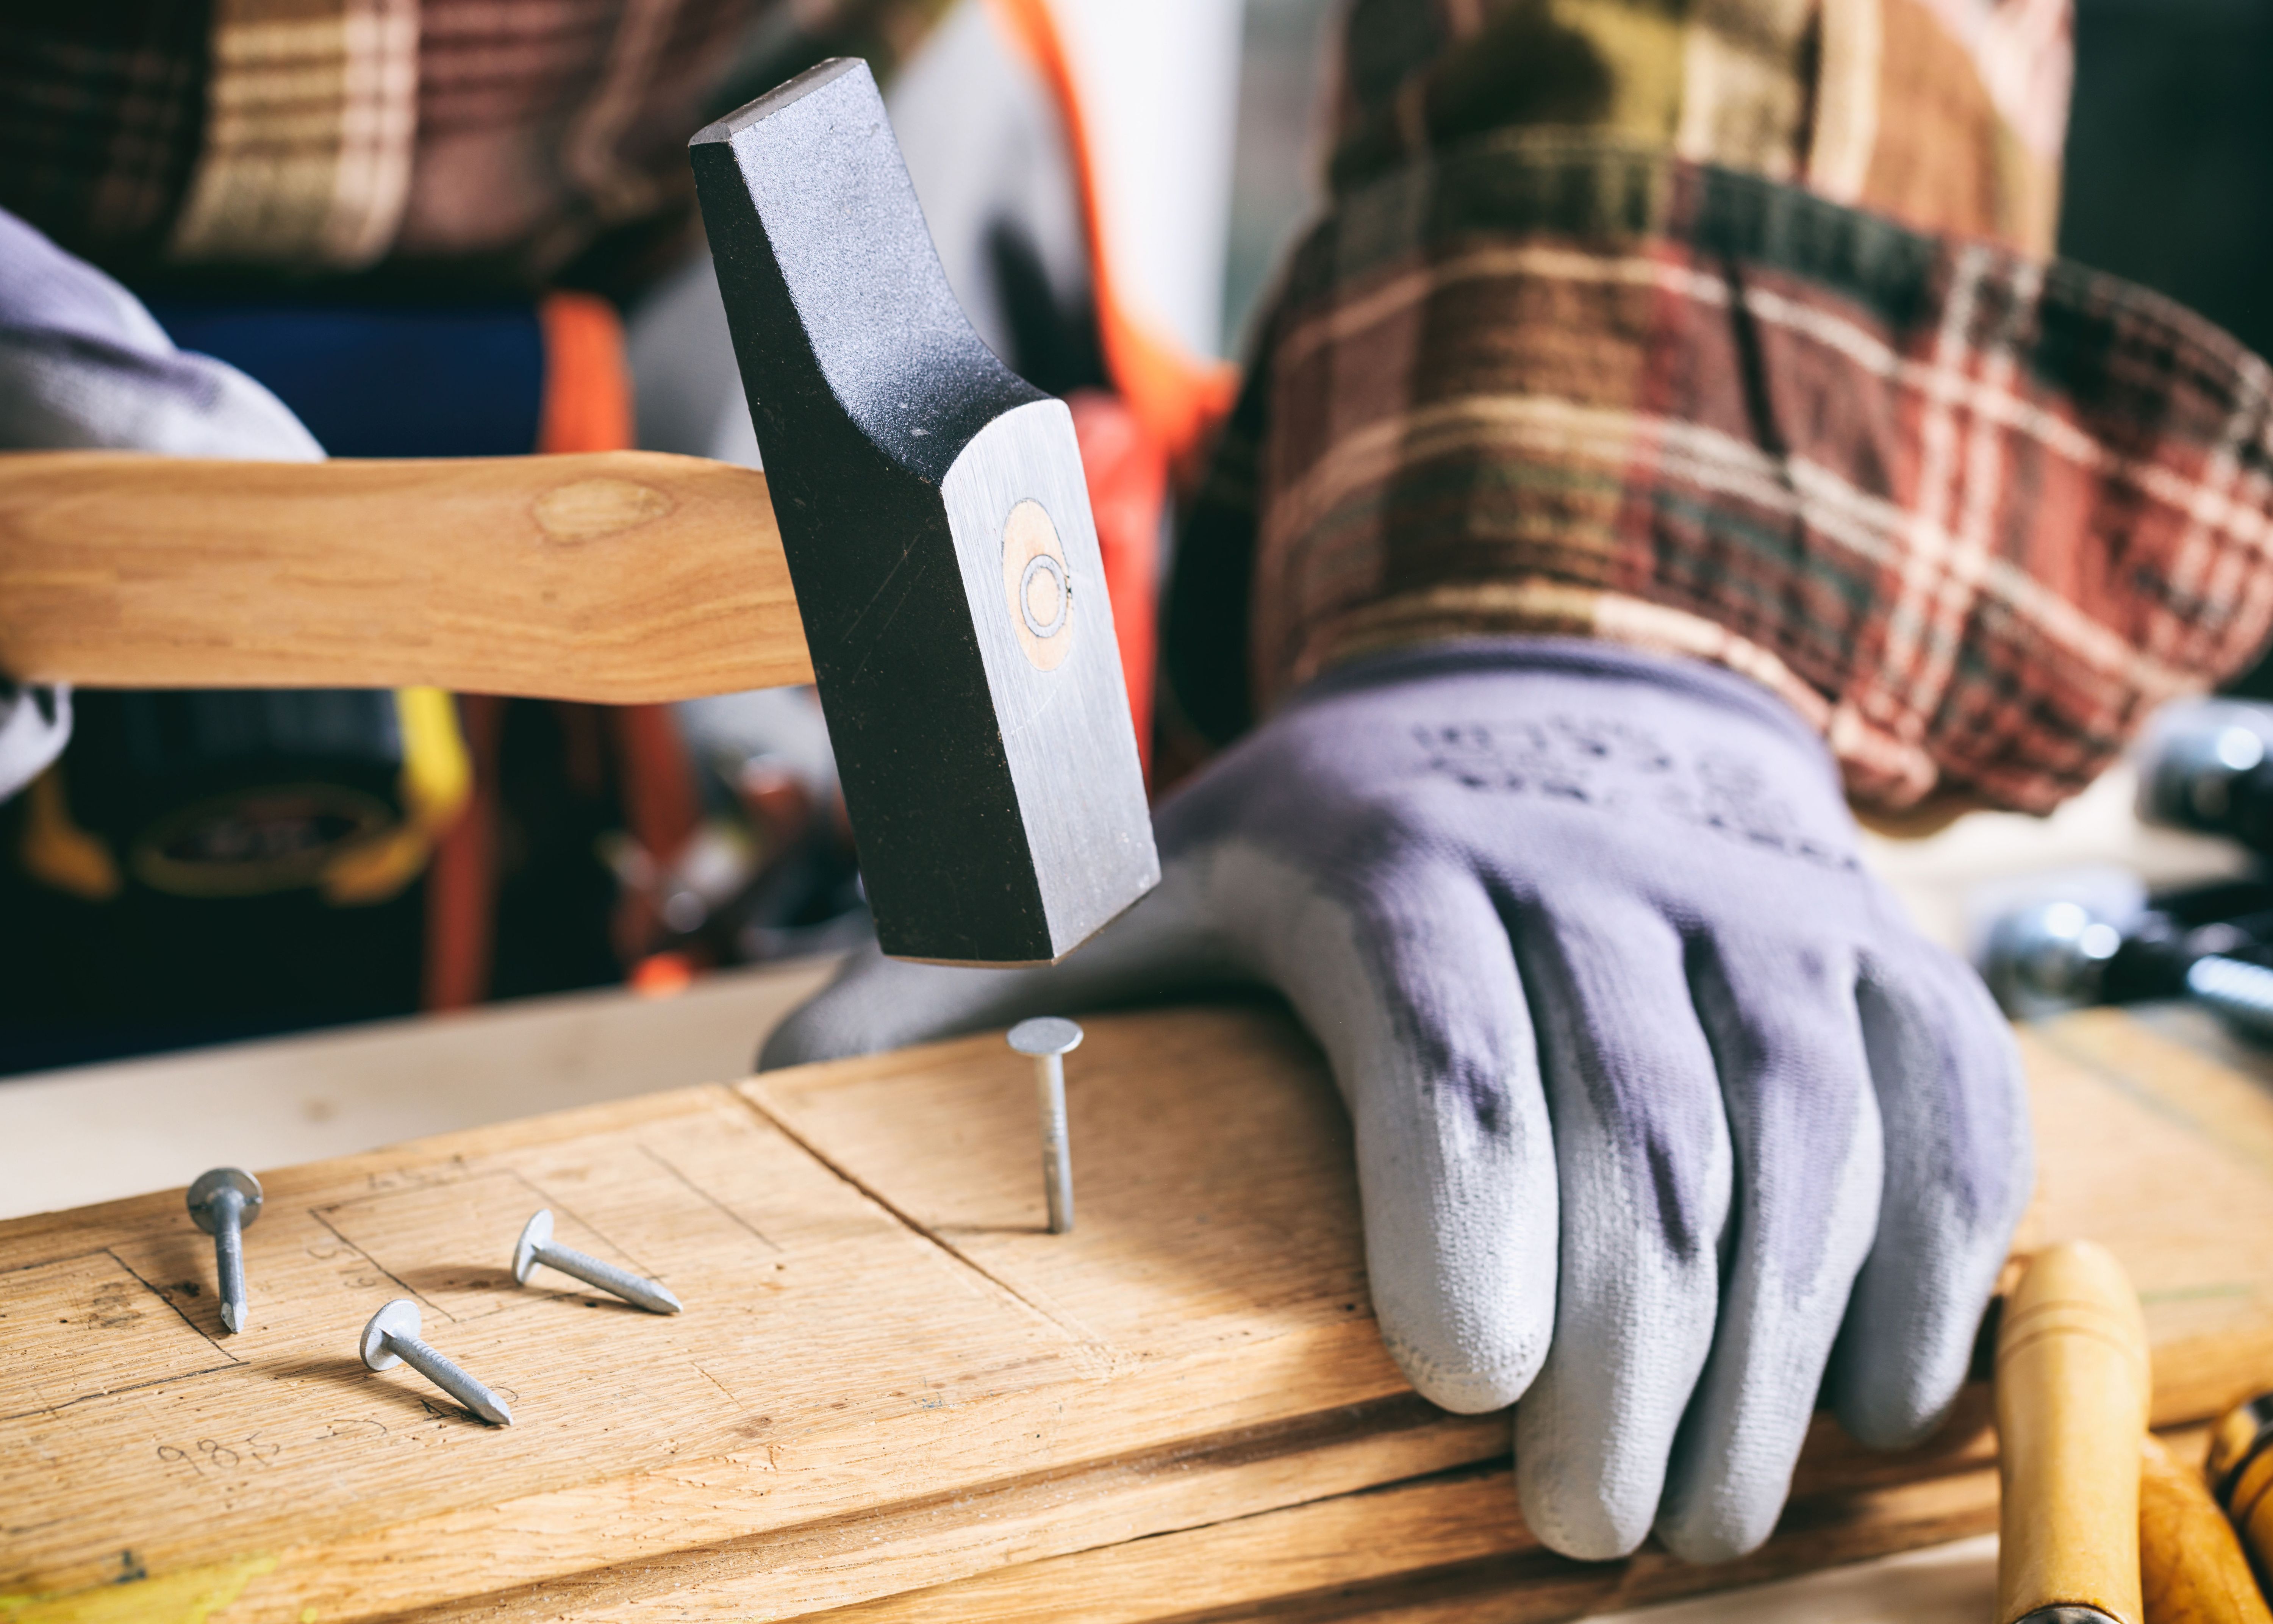 Der Schreinerhammer besitzt einen rechteckigen Hammerkopf aus Stahl, mit dem kleinste Nägel mühelos in Holz geschlagen werden können.